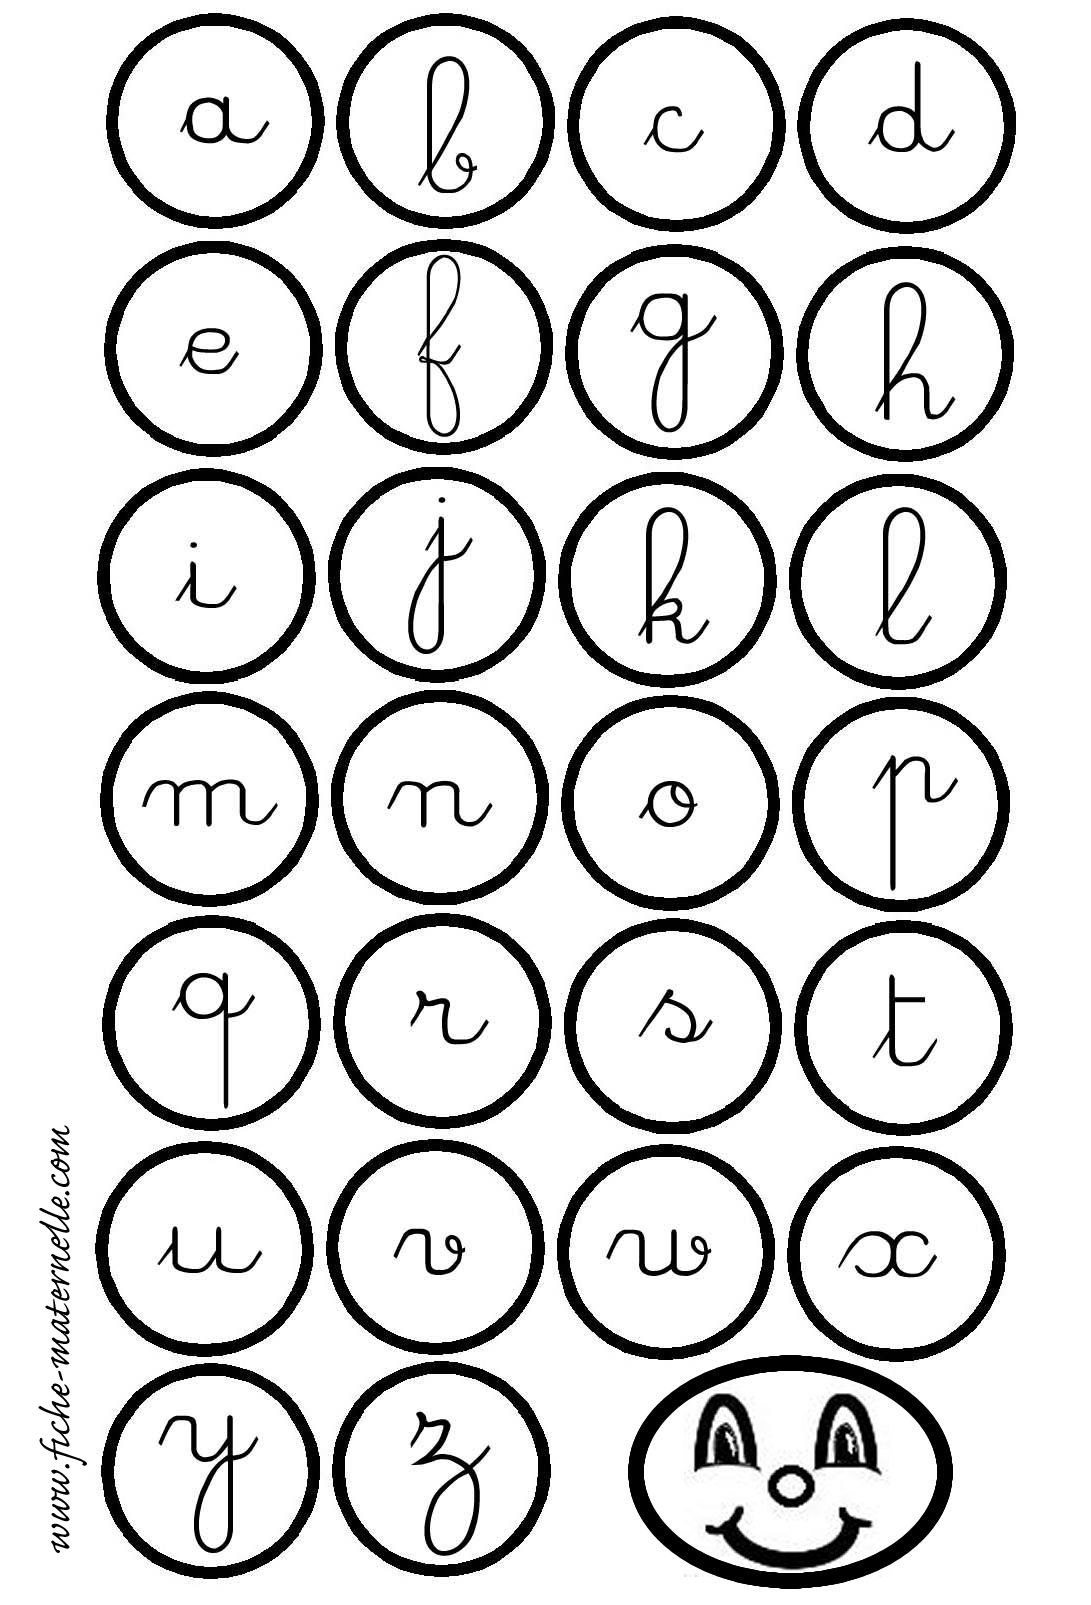 Maternelle : Lecture Et Écriture Des Lettres De L'alphabet pour Exercice D Alphabet En Maternelle